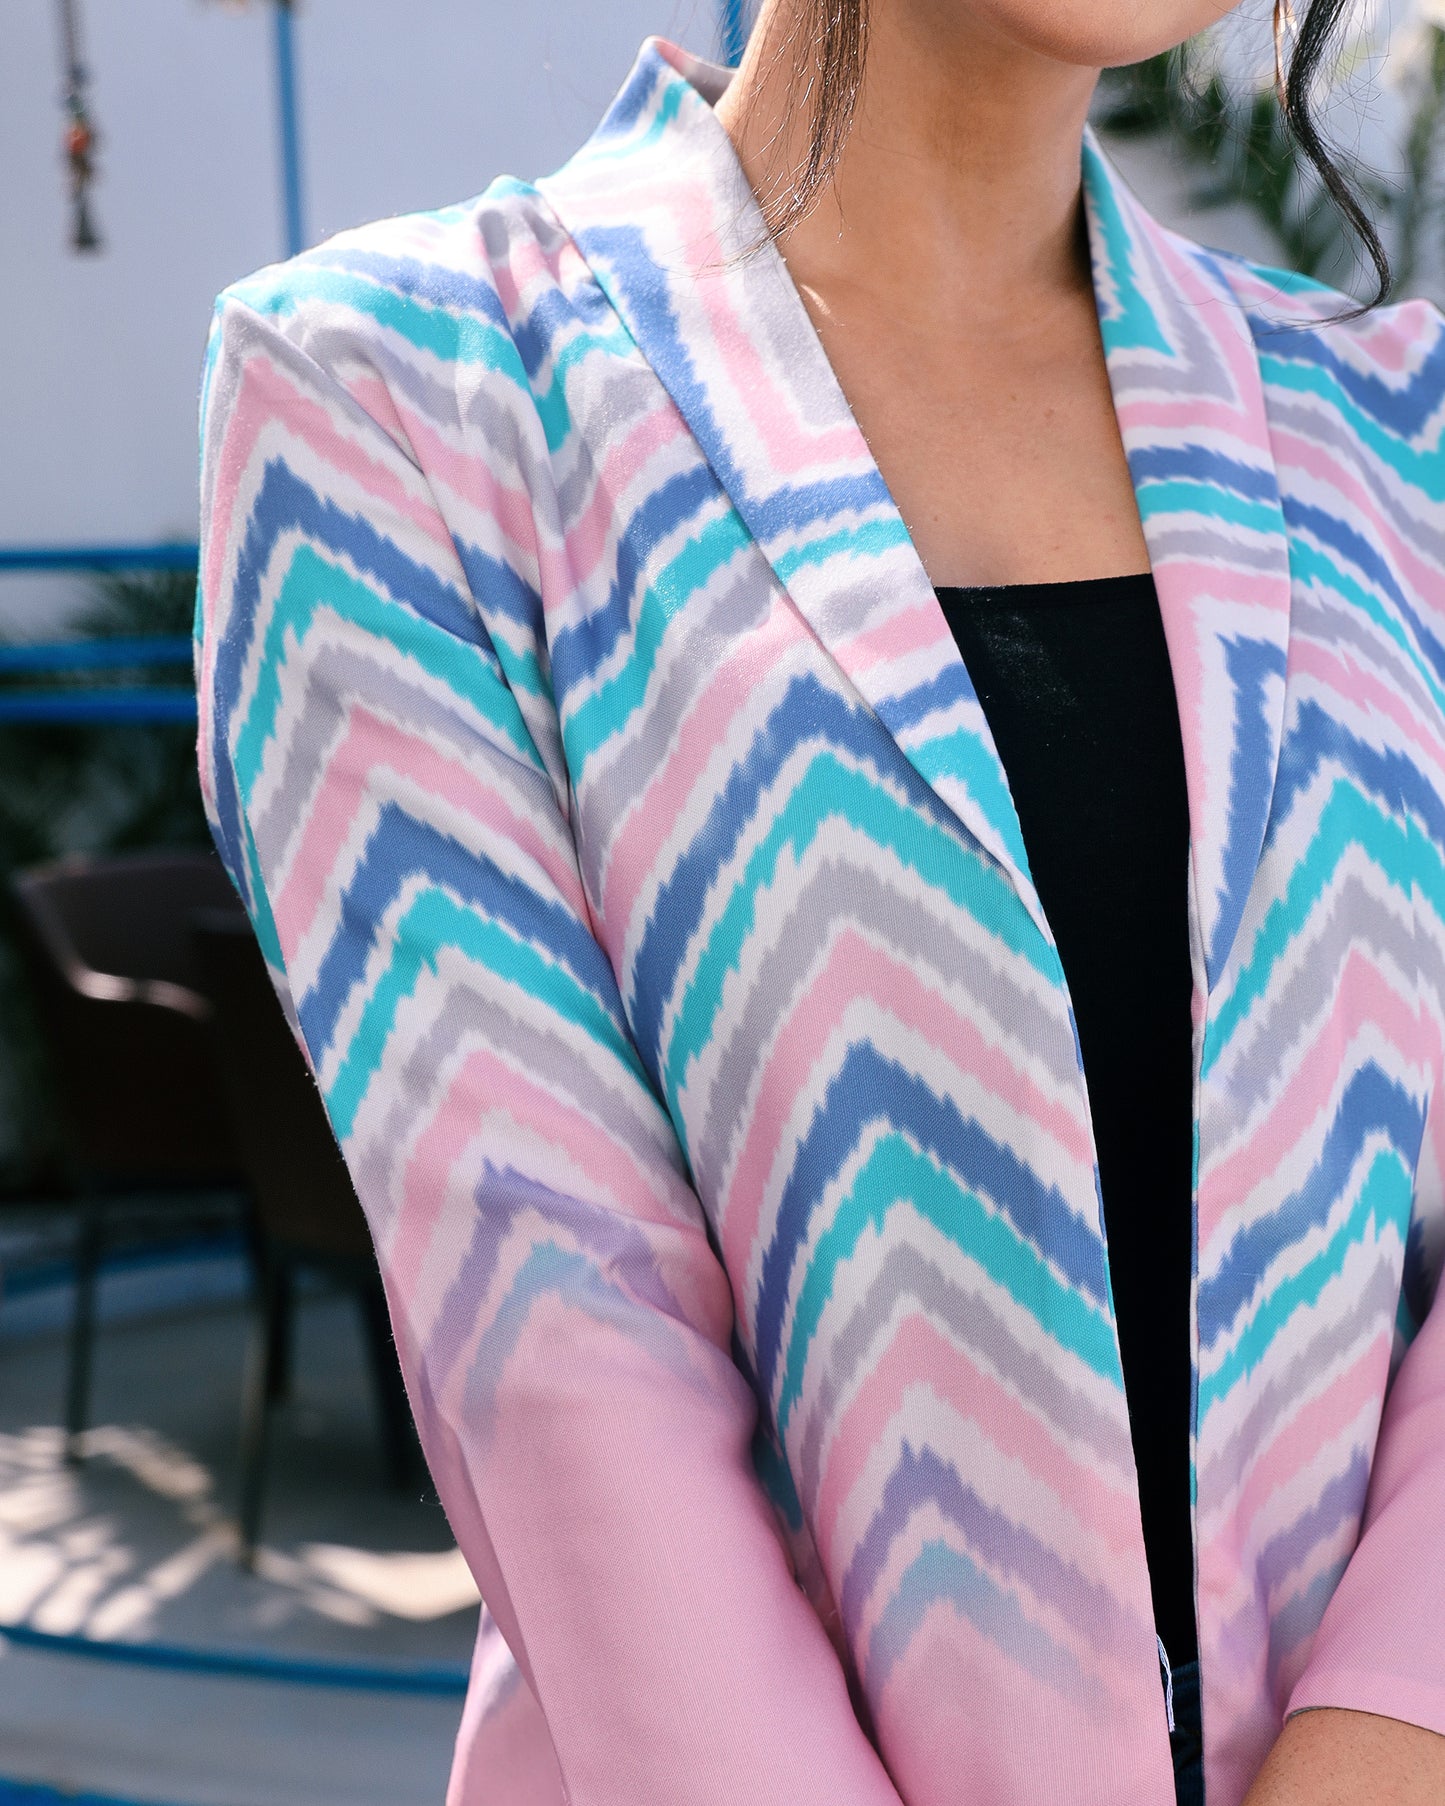 Sleek Style Tailored Power: Women's Office Jacket